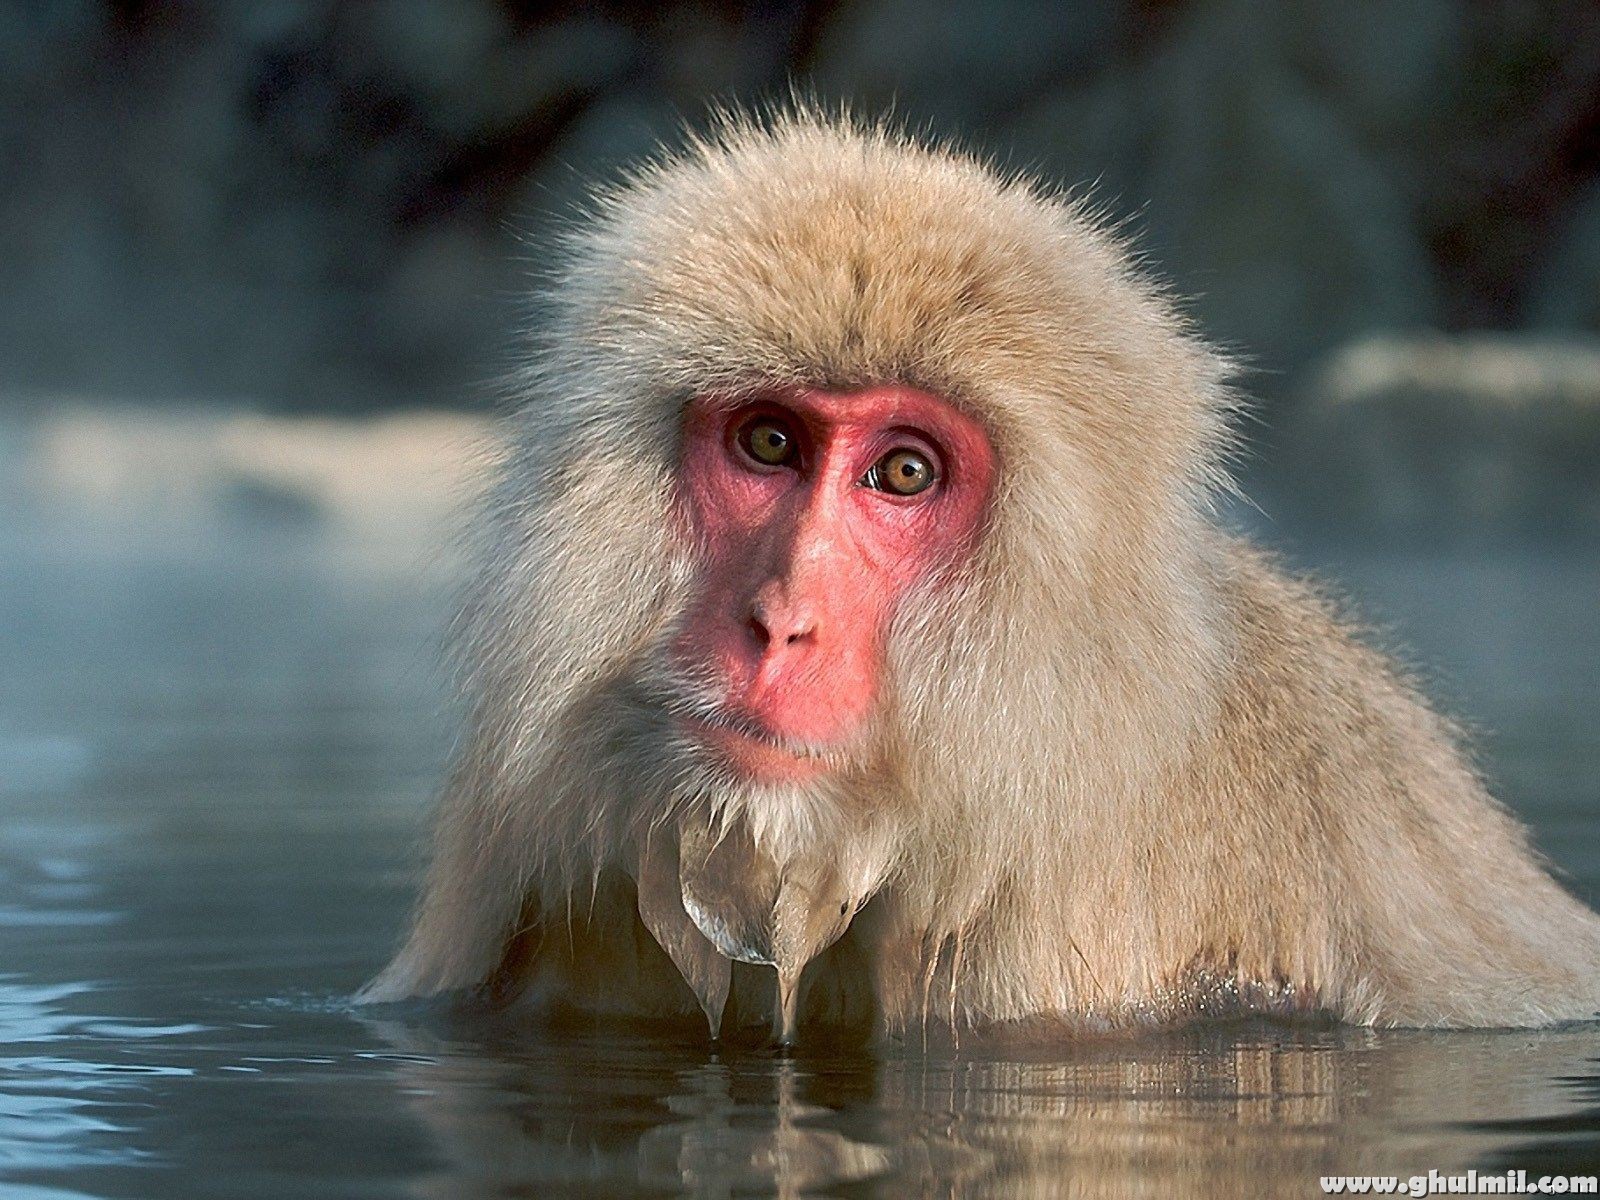 un fond d'écran kay hd 2015,macaque,macaque japonais,primate,bouche,faune